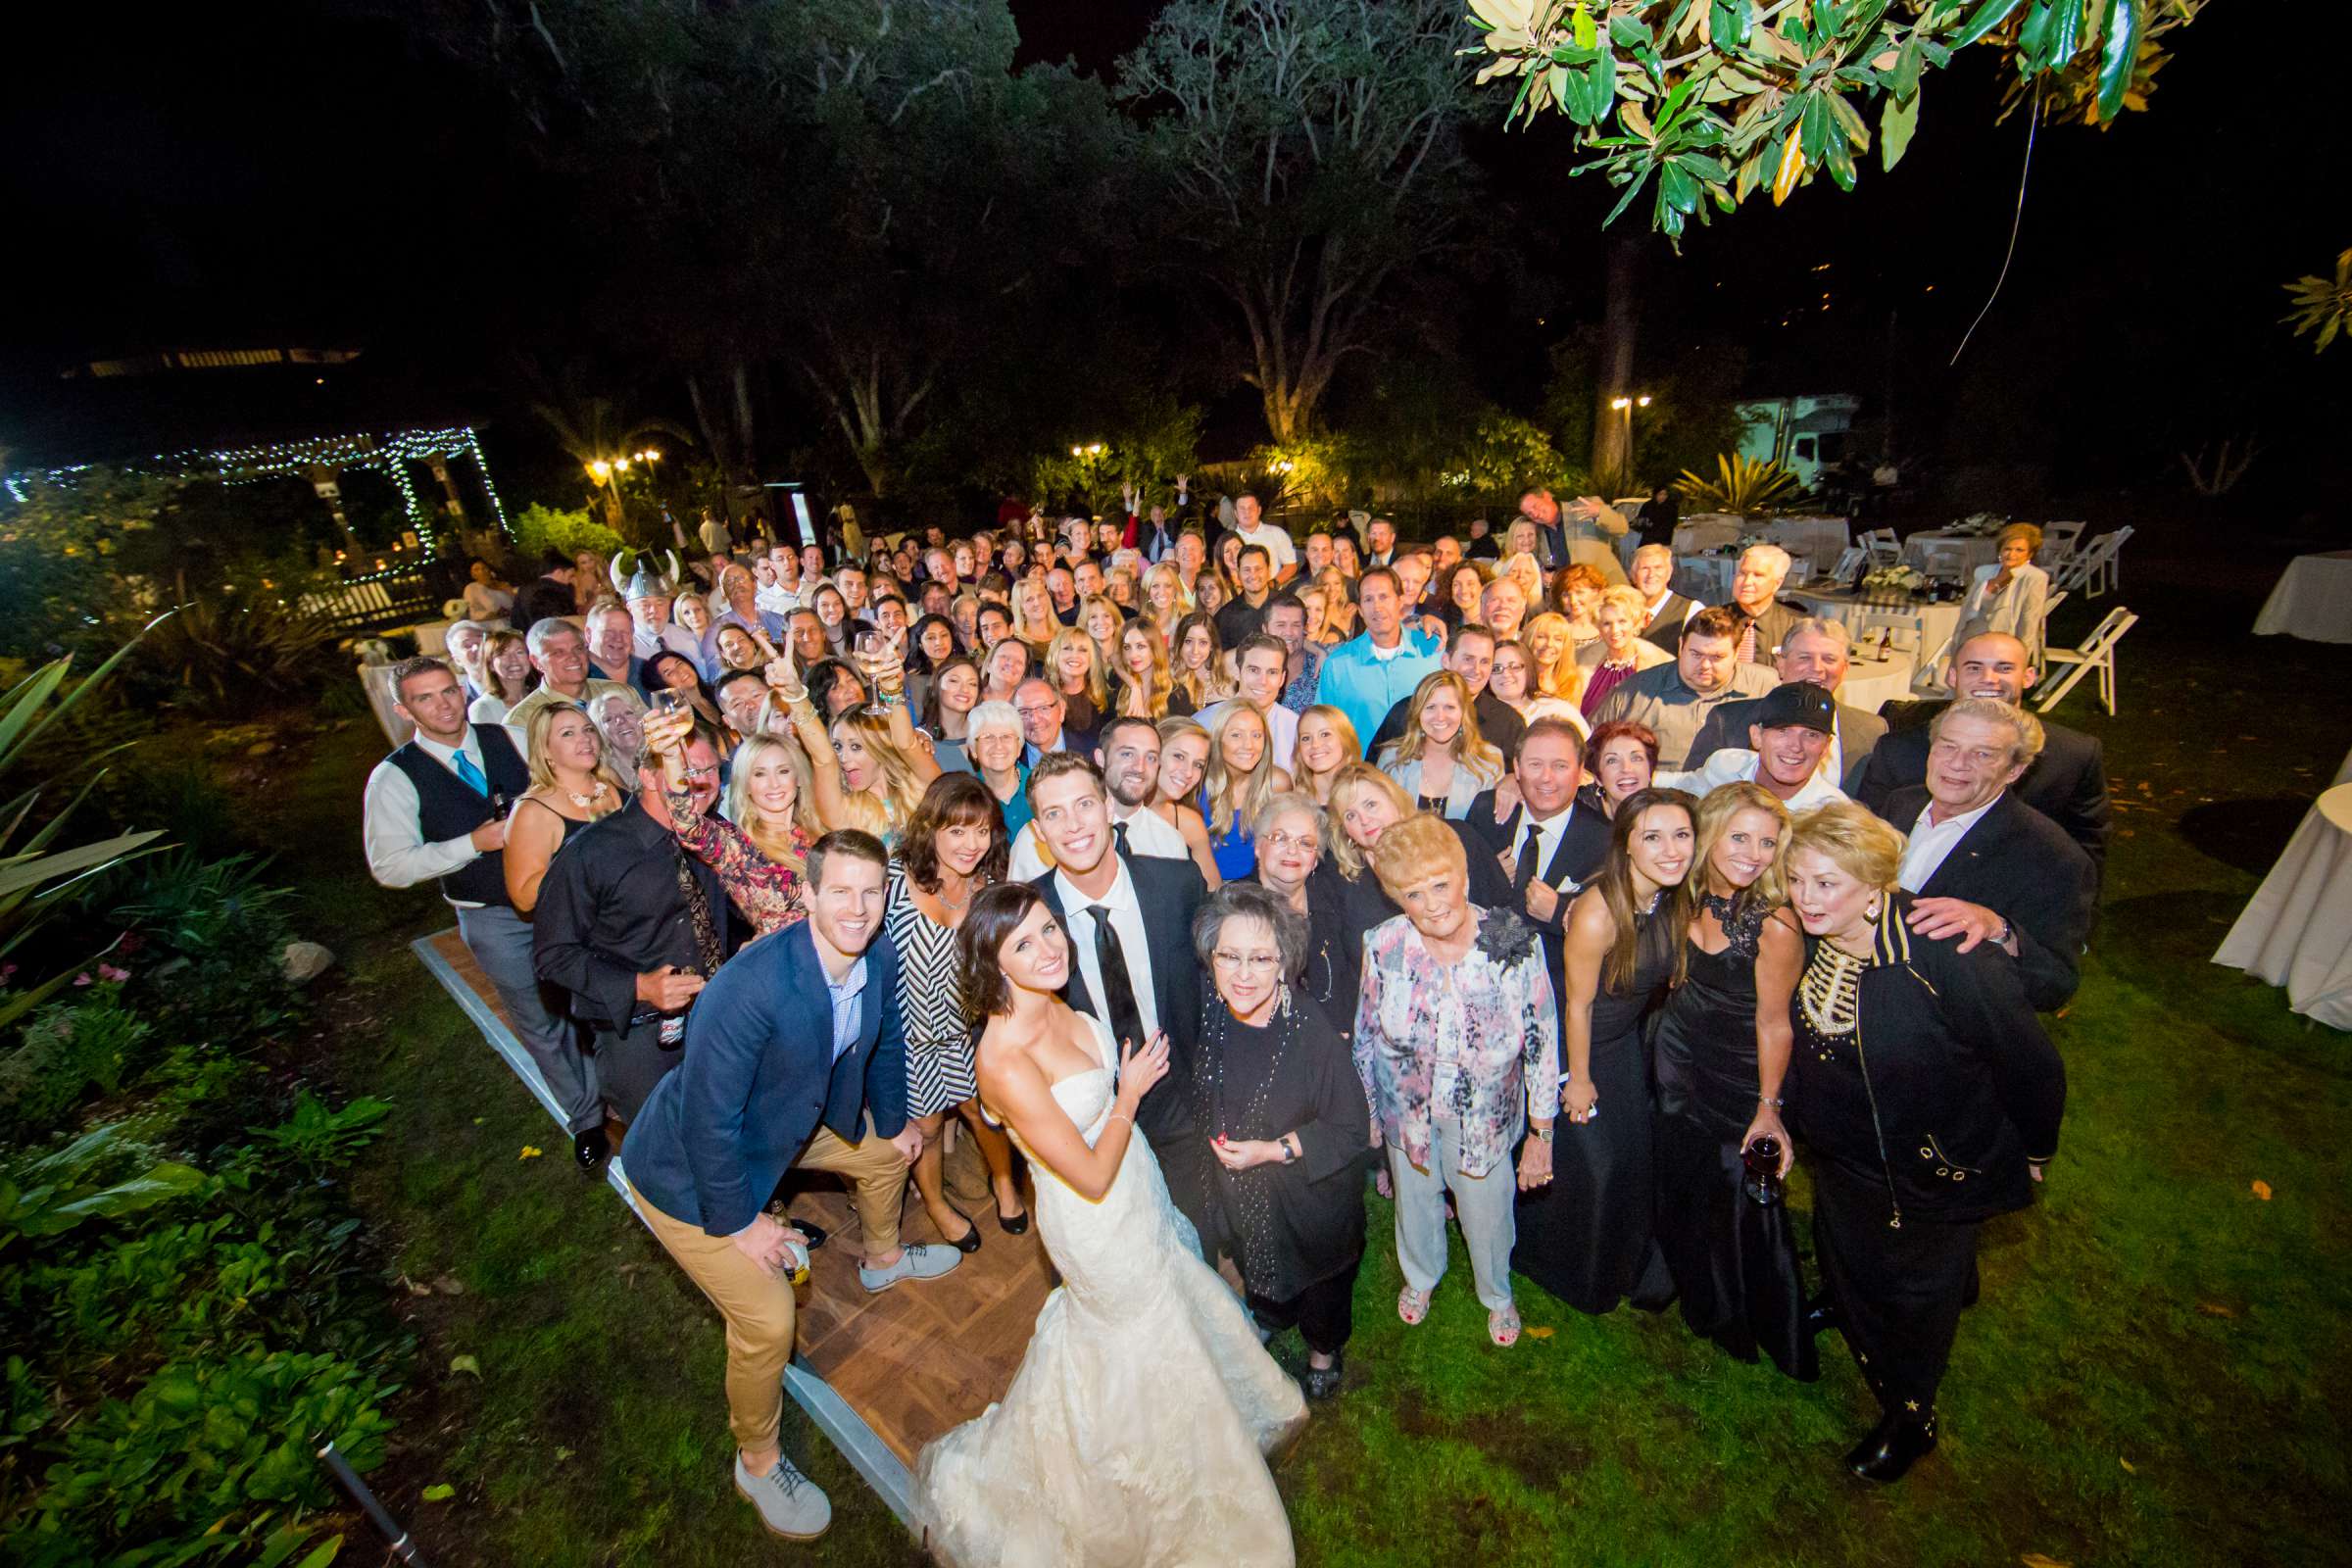 San Diego Botanic Garden Wedding, Lauren and Bryant Wedding Photo #138755 by True Photography